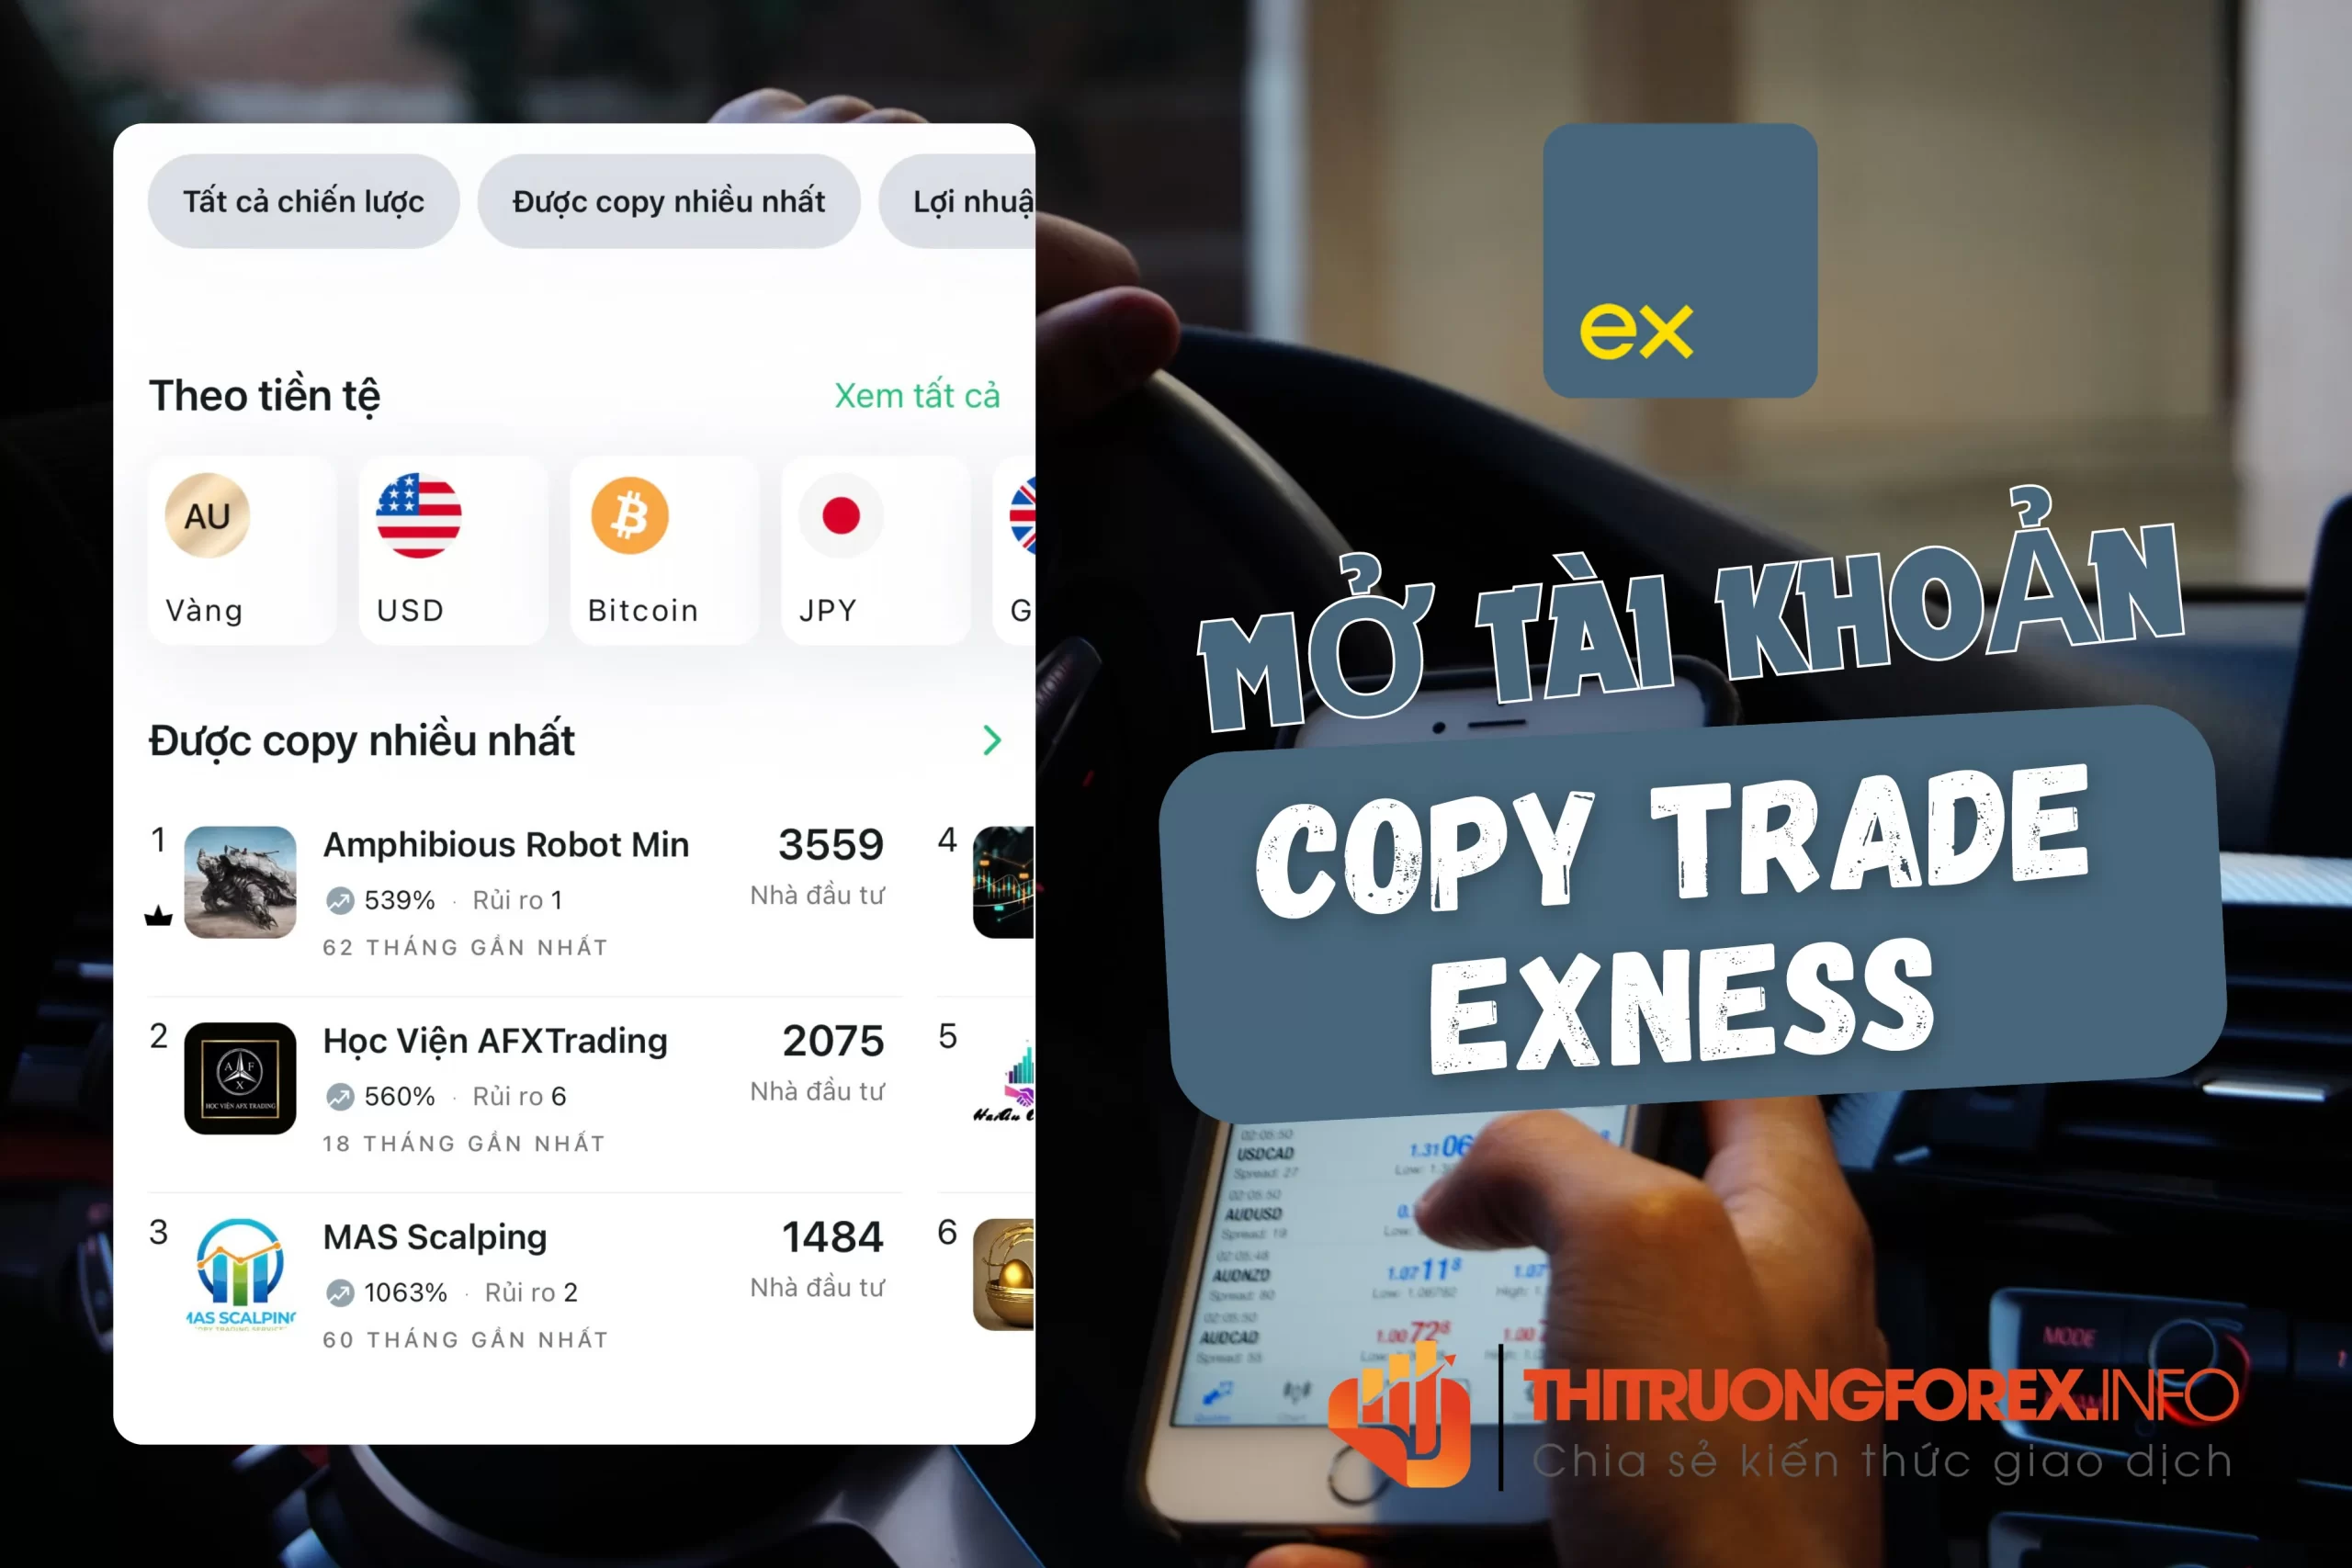 Mở tài khoản copy trade Exness trên ứng dụng Social Trading